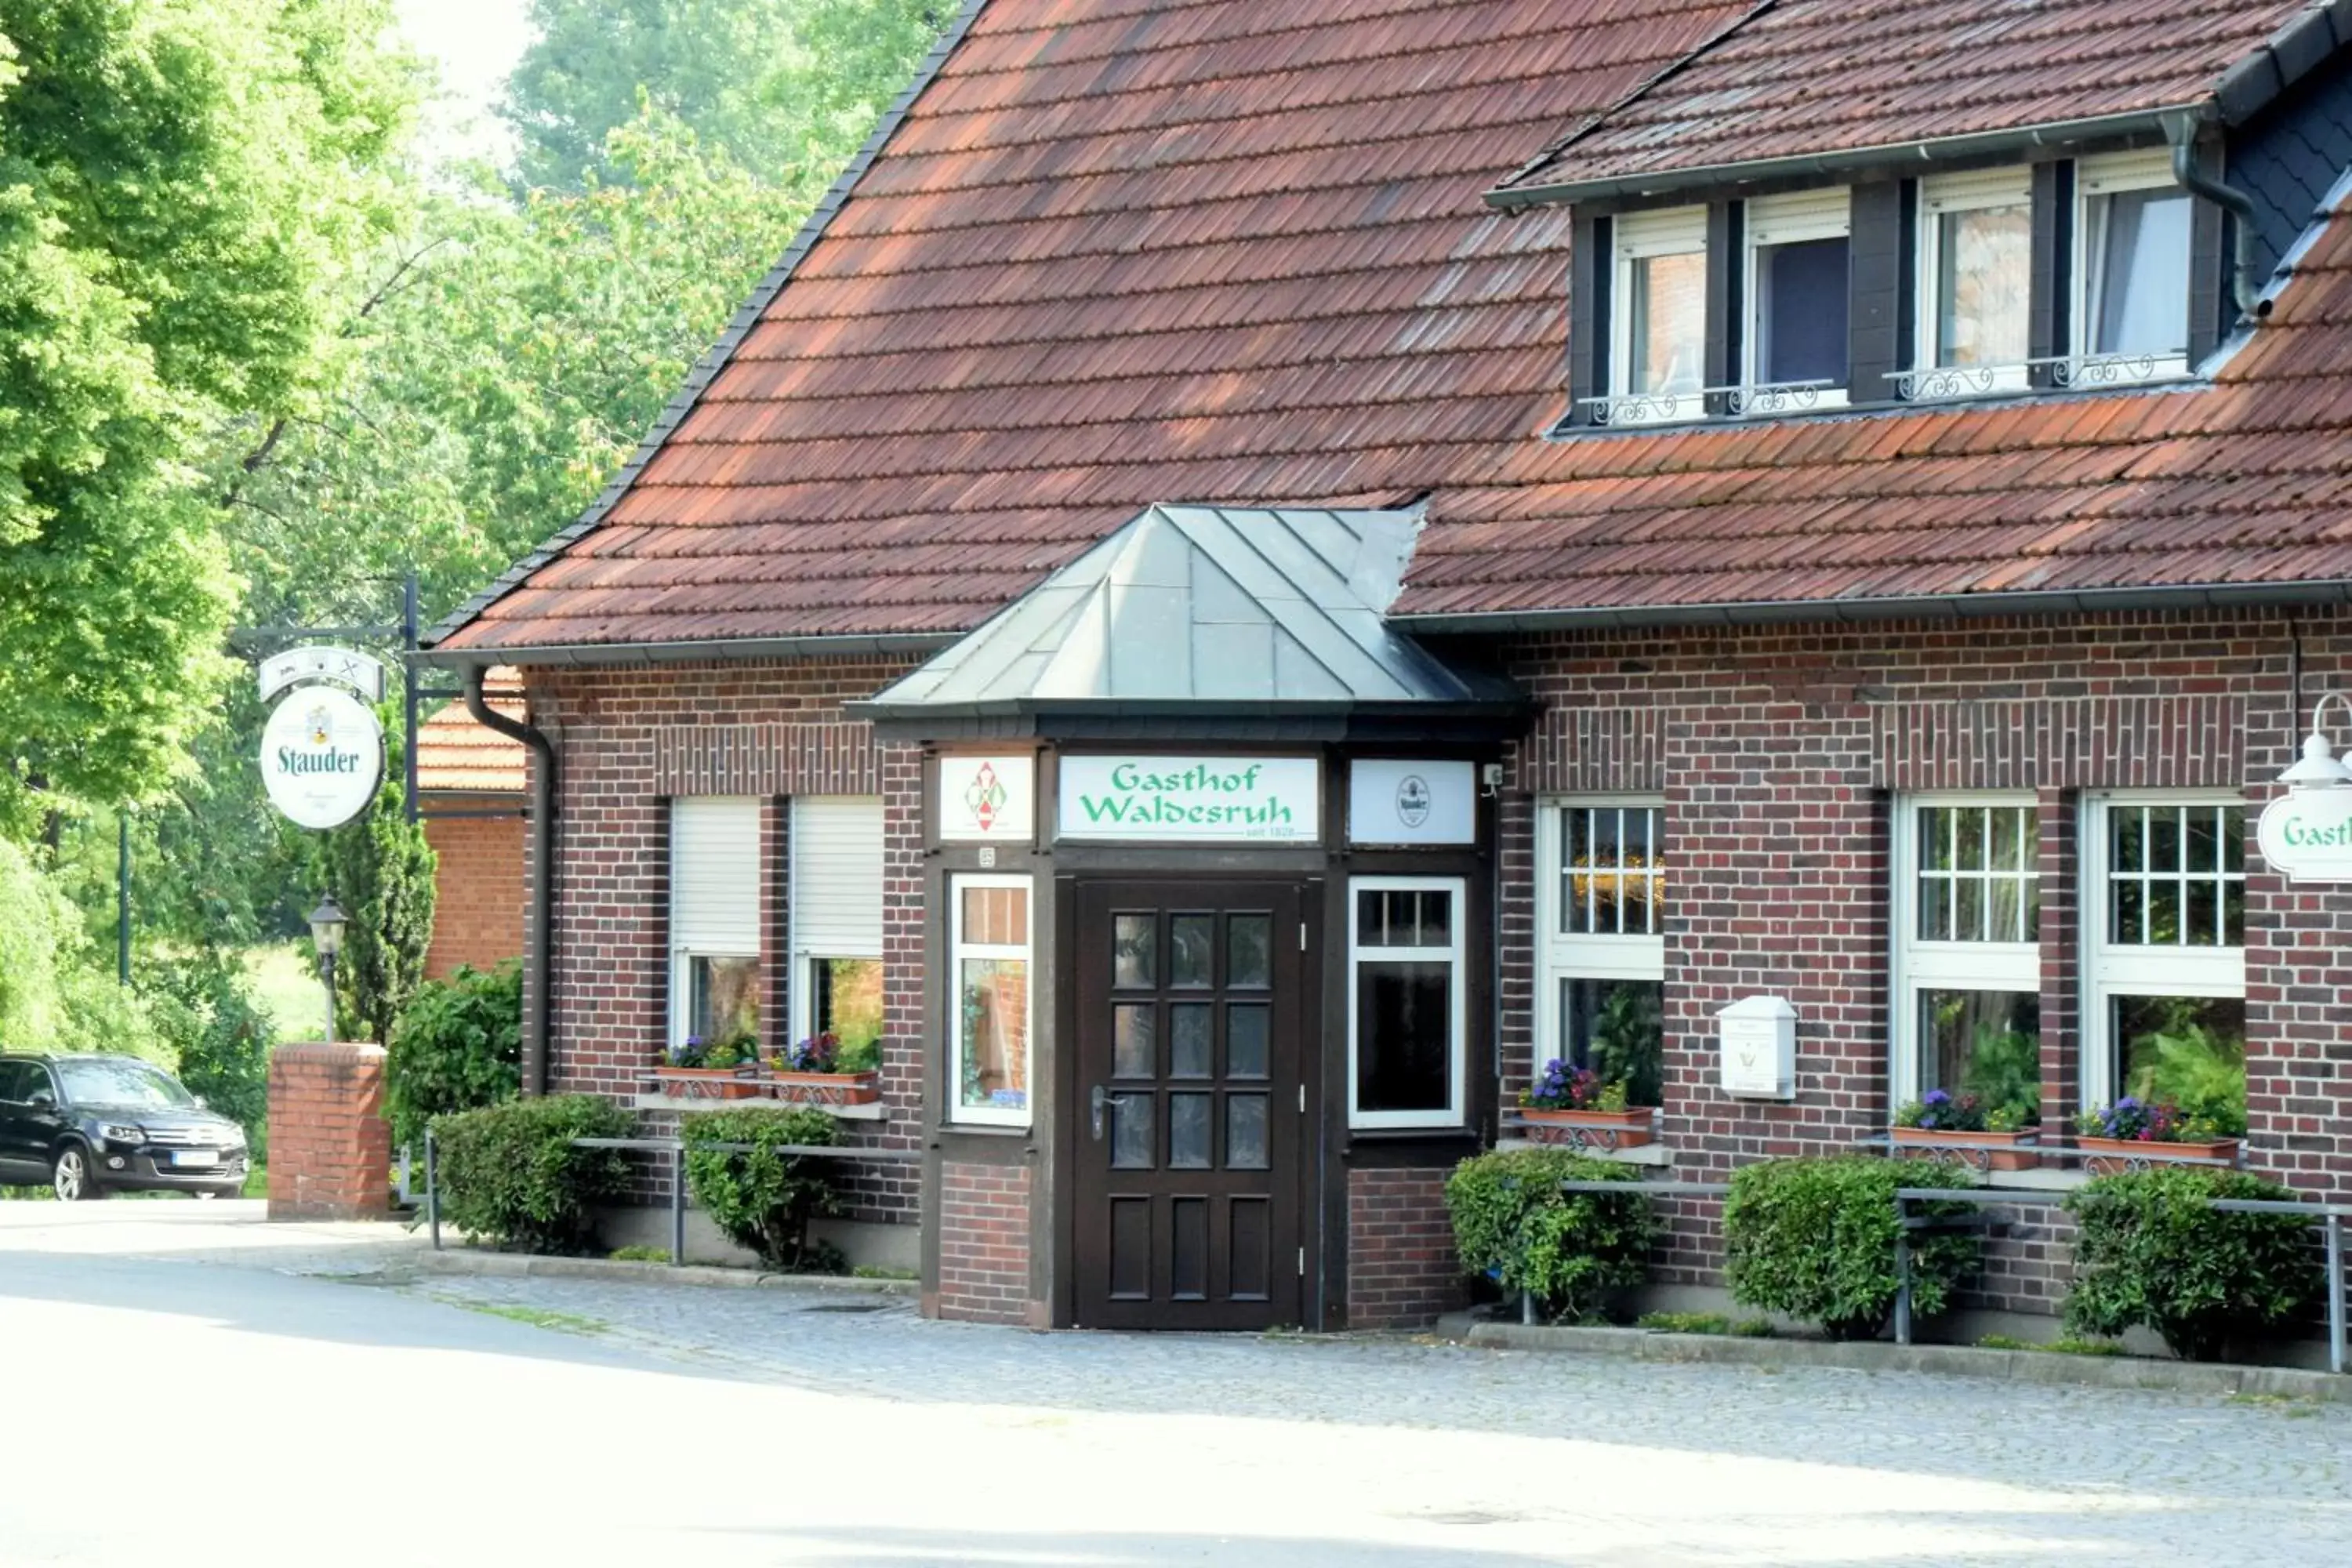 Property Building in Gasthof Waldesruh